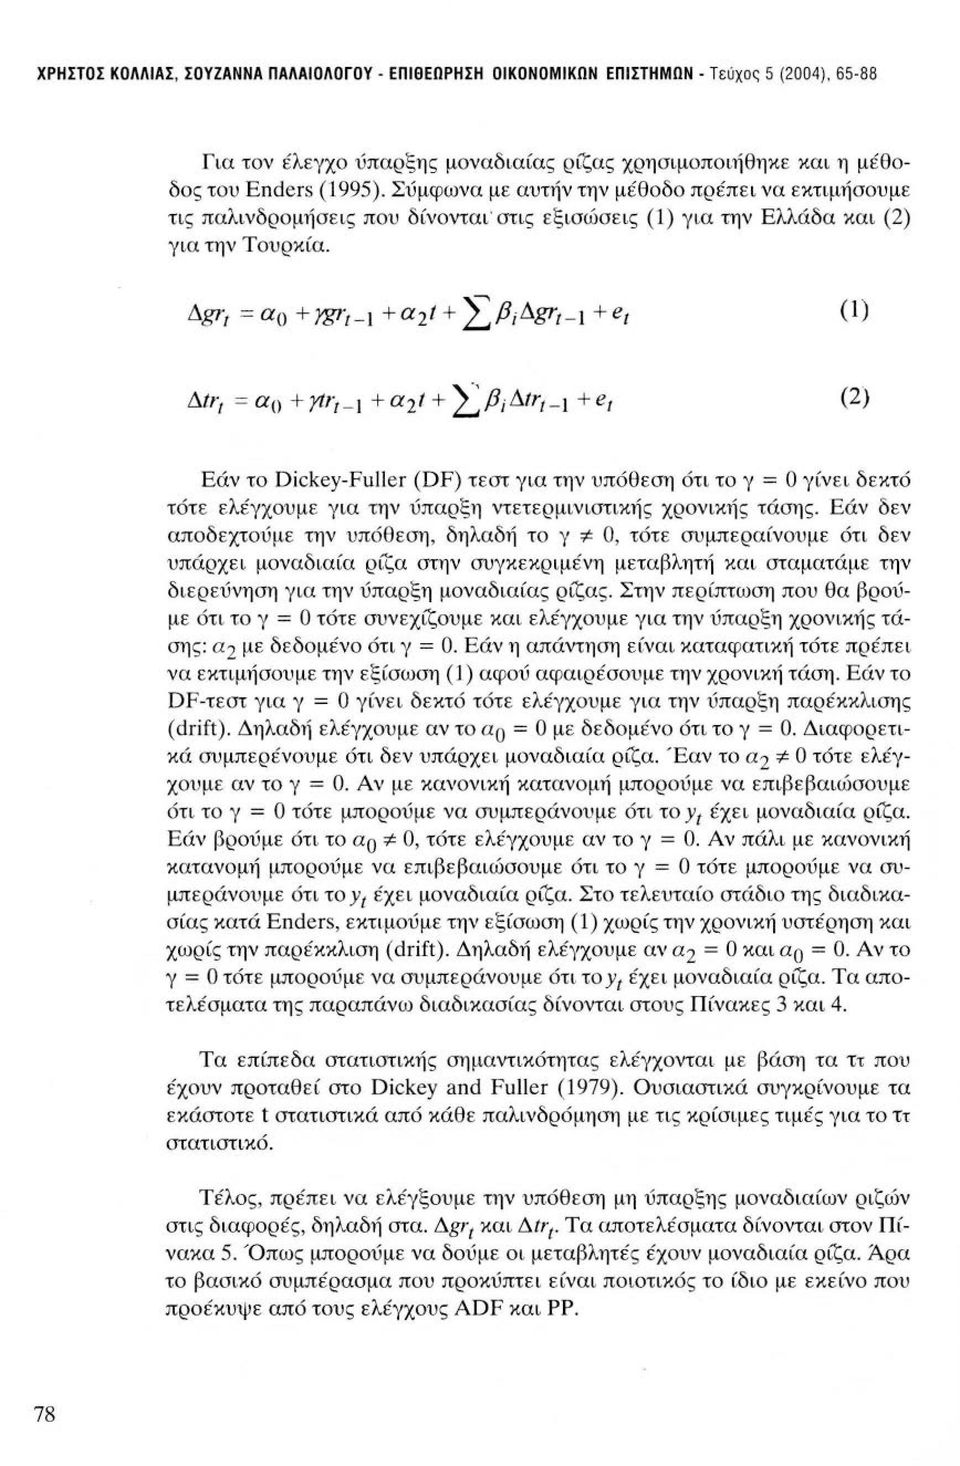 (1) (2) Εάν το Dickey-Fuller (DF) τεστ για την υπόθεση ότι το γ = Ο γίνει δεκτό τότε ελέγχουμε για την ύπαρξη ντετερμινιστικής χρονικής τάσης.